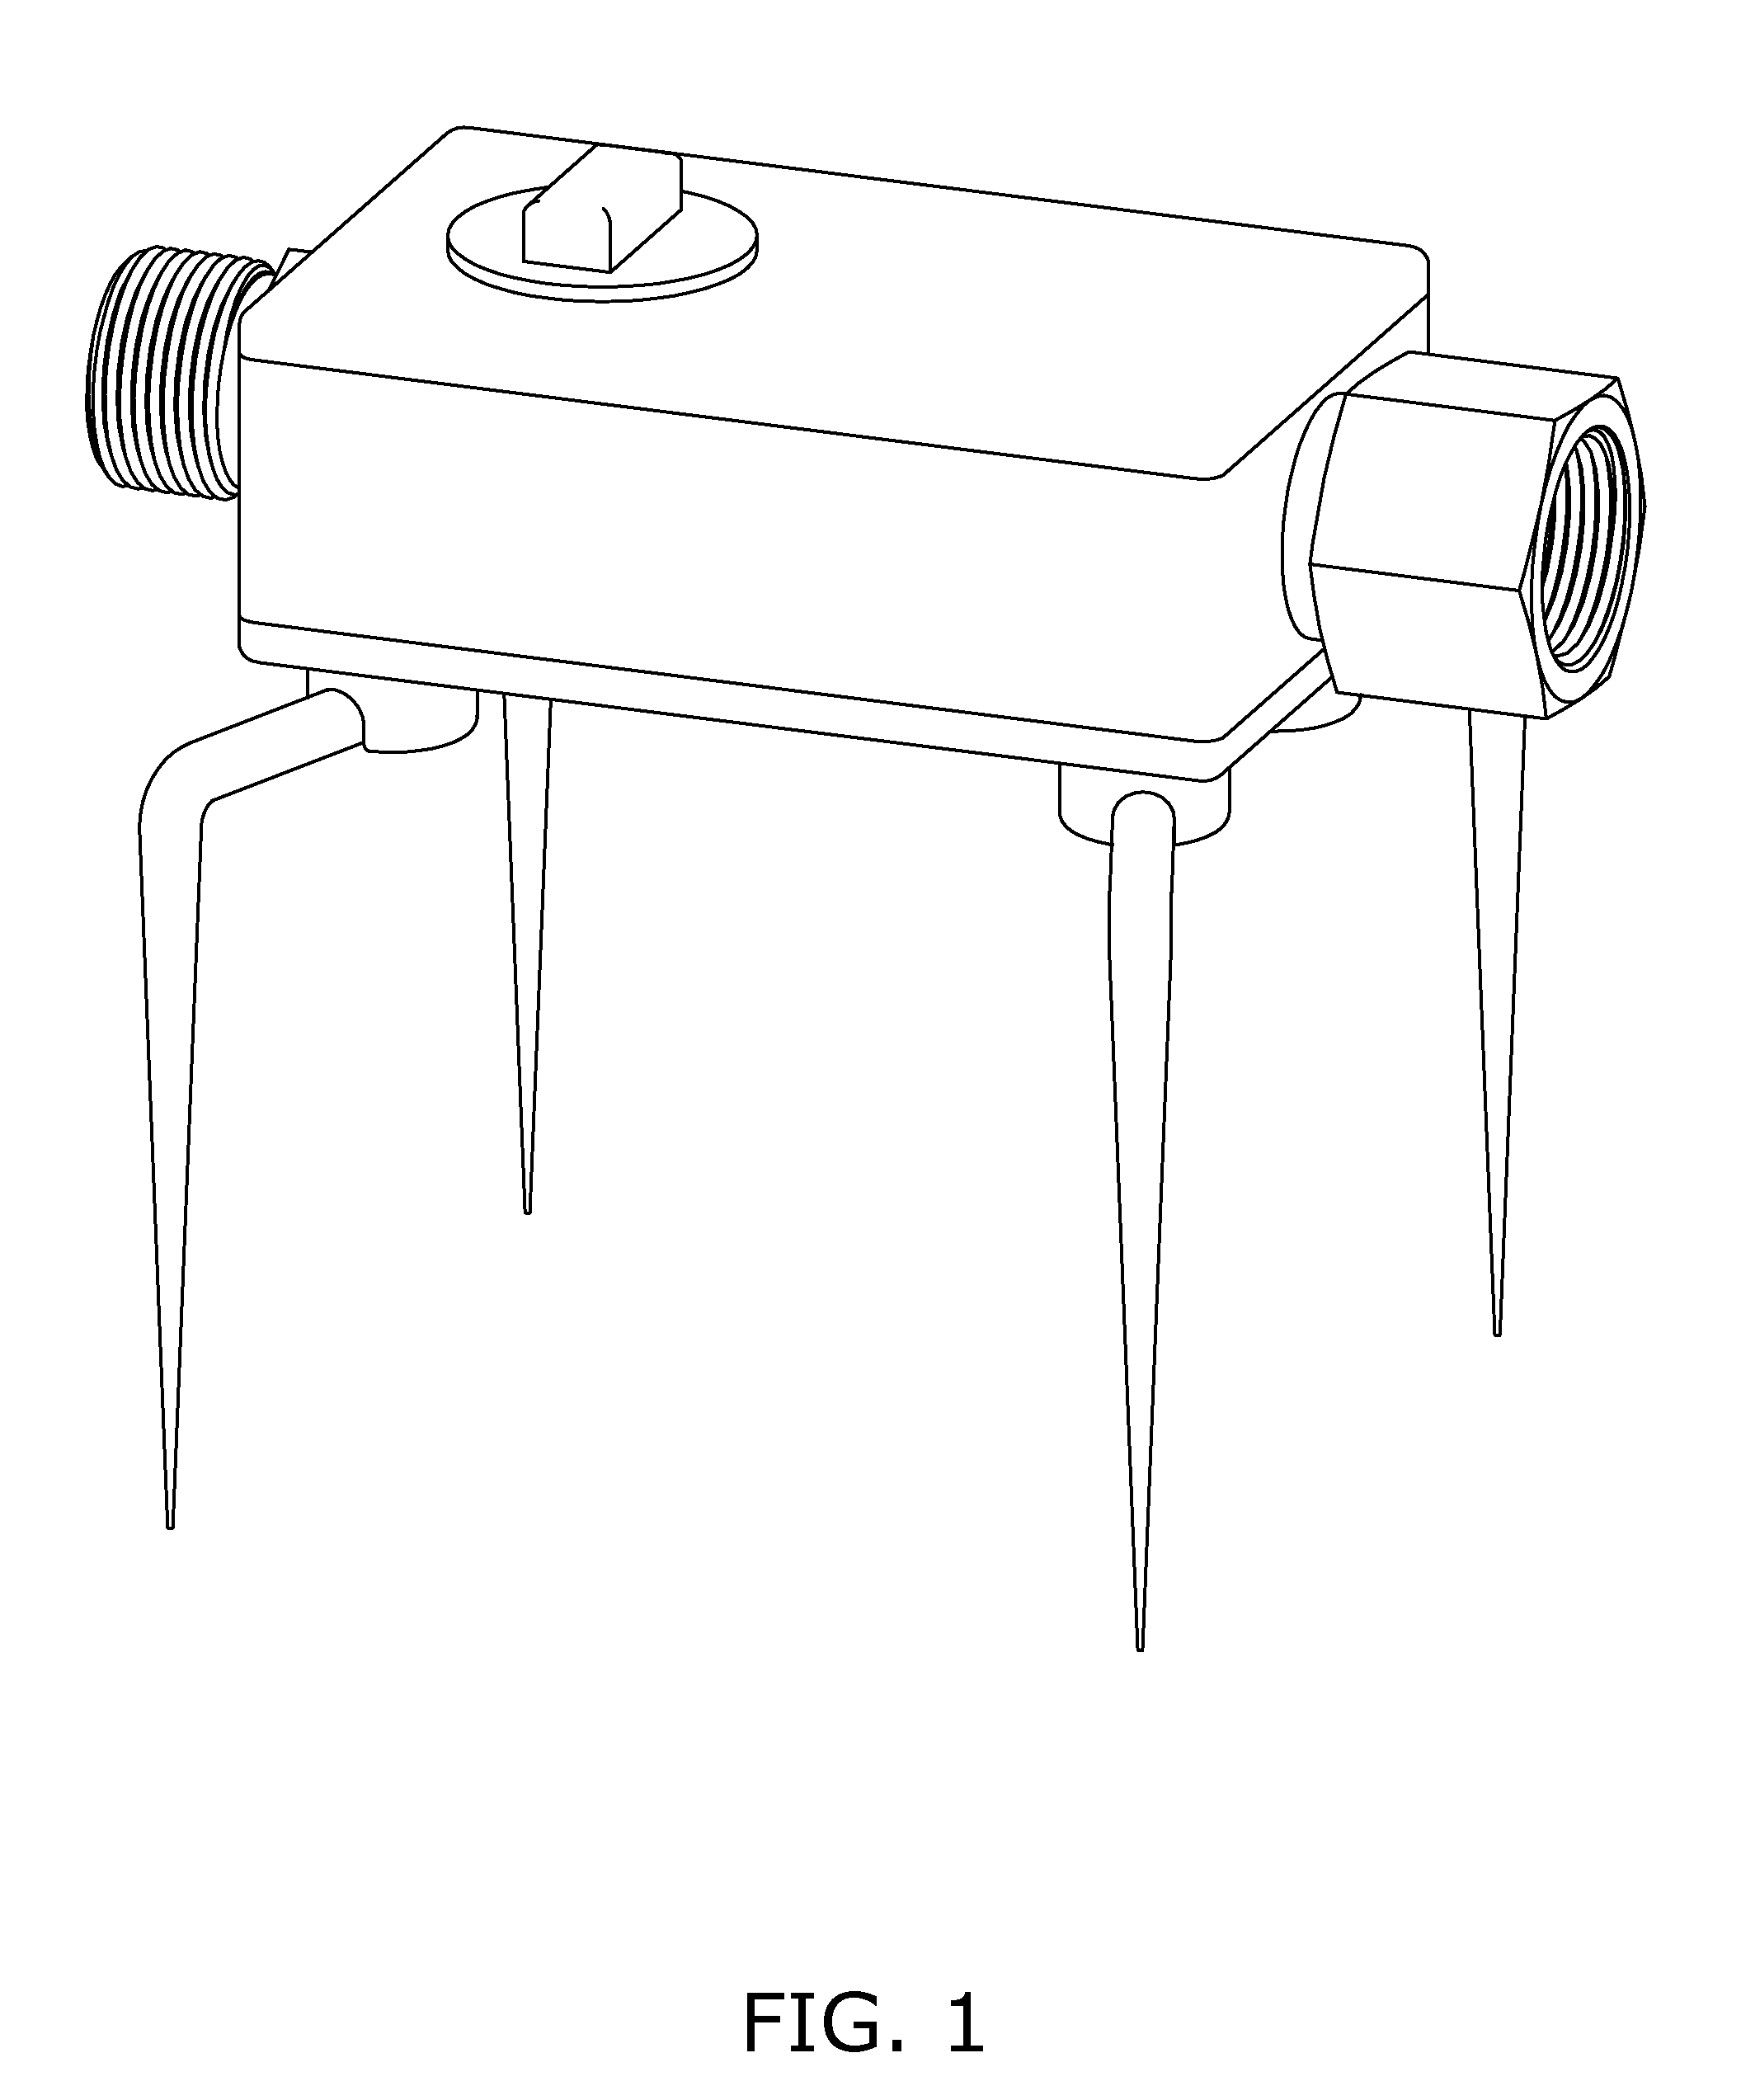 Sprinkler control module